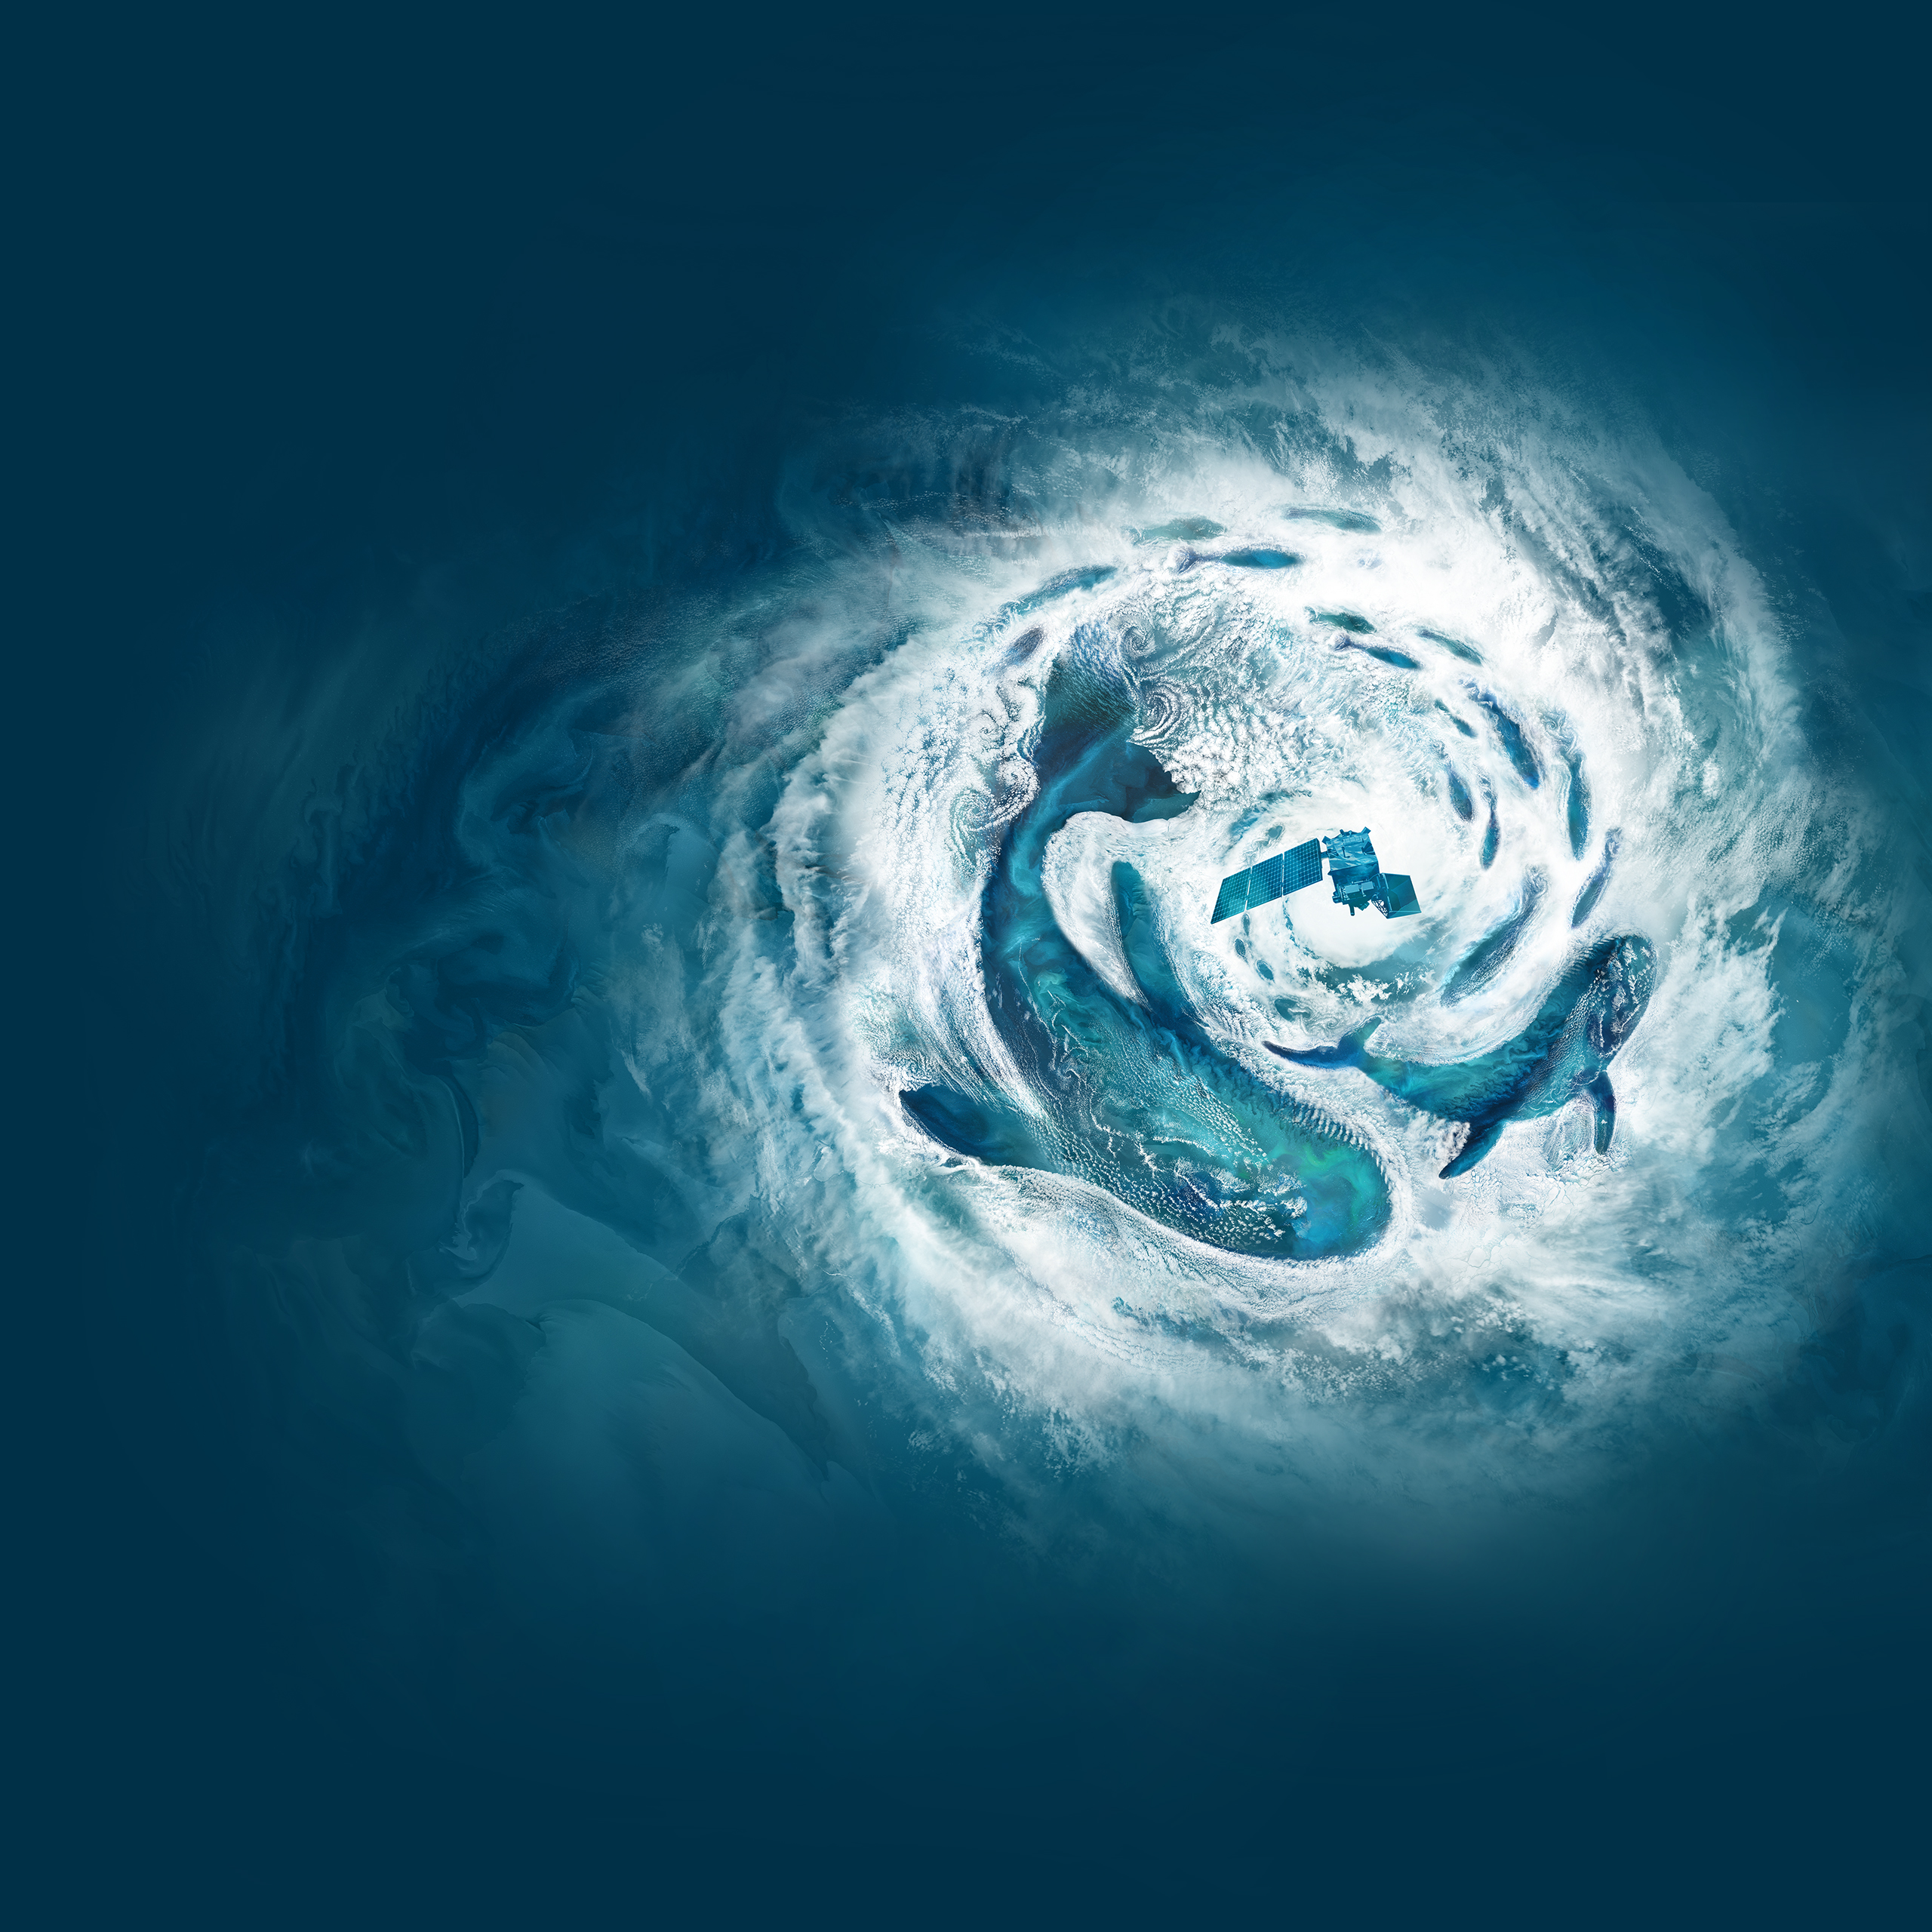 Esta imagen es parte del póster de la NASA para el Día de la Tierra de 2024 es una ilustración vertical de 15x30 con temática oceánica creada a partir de imágenes de nubes de satélites de la NASA superpuestas a datos del océano. Las imágenes de nubes blancas envuelven distintas formas, definiendo tres ballenas y un cardumen de peces. Los remolinos de nubes, conocidos como vórtices de Von Kármán, crean una sensación de movimiento en la composición. El punto focal es un ciclón en el tercio superior del póster. En el centro, vuela el satélite PACE, lanzado recientemente. Las imágenes del océano –en tonos azules, verdes y aguamarina– están llenas de cambios de color sutiles y patrones ondulantes creados por la agitación de sedimentos, materia orgánica y fitoplancton.